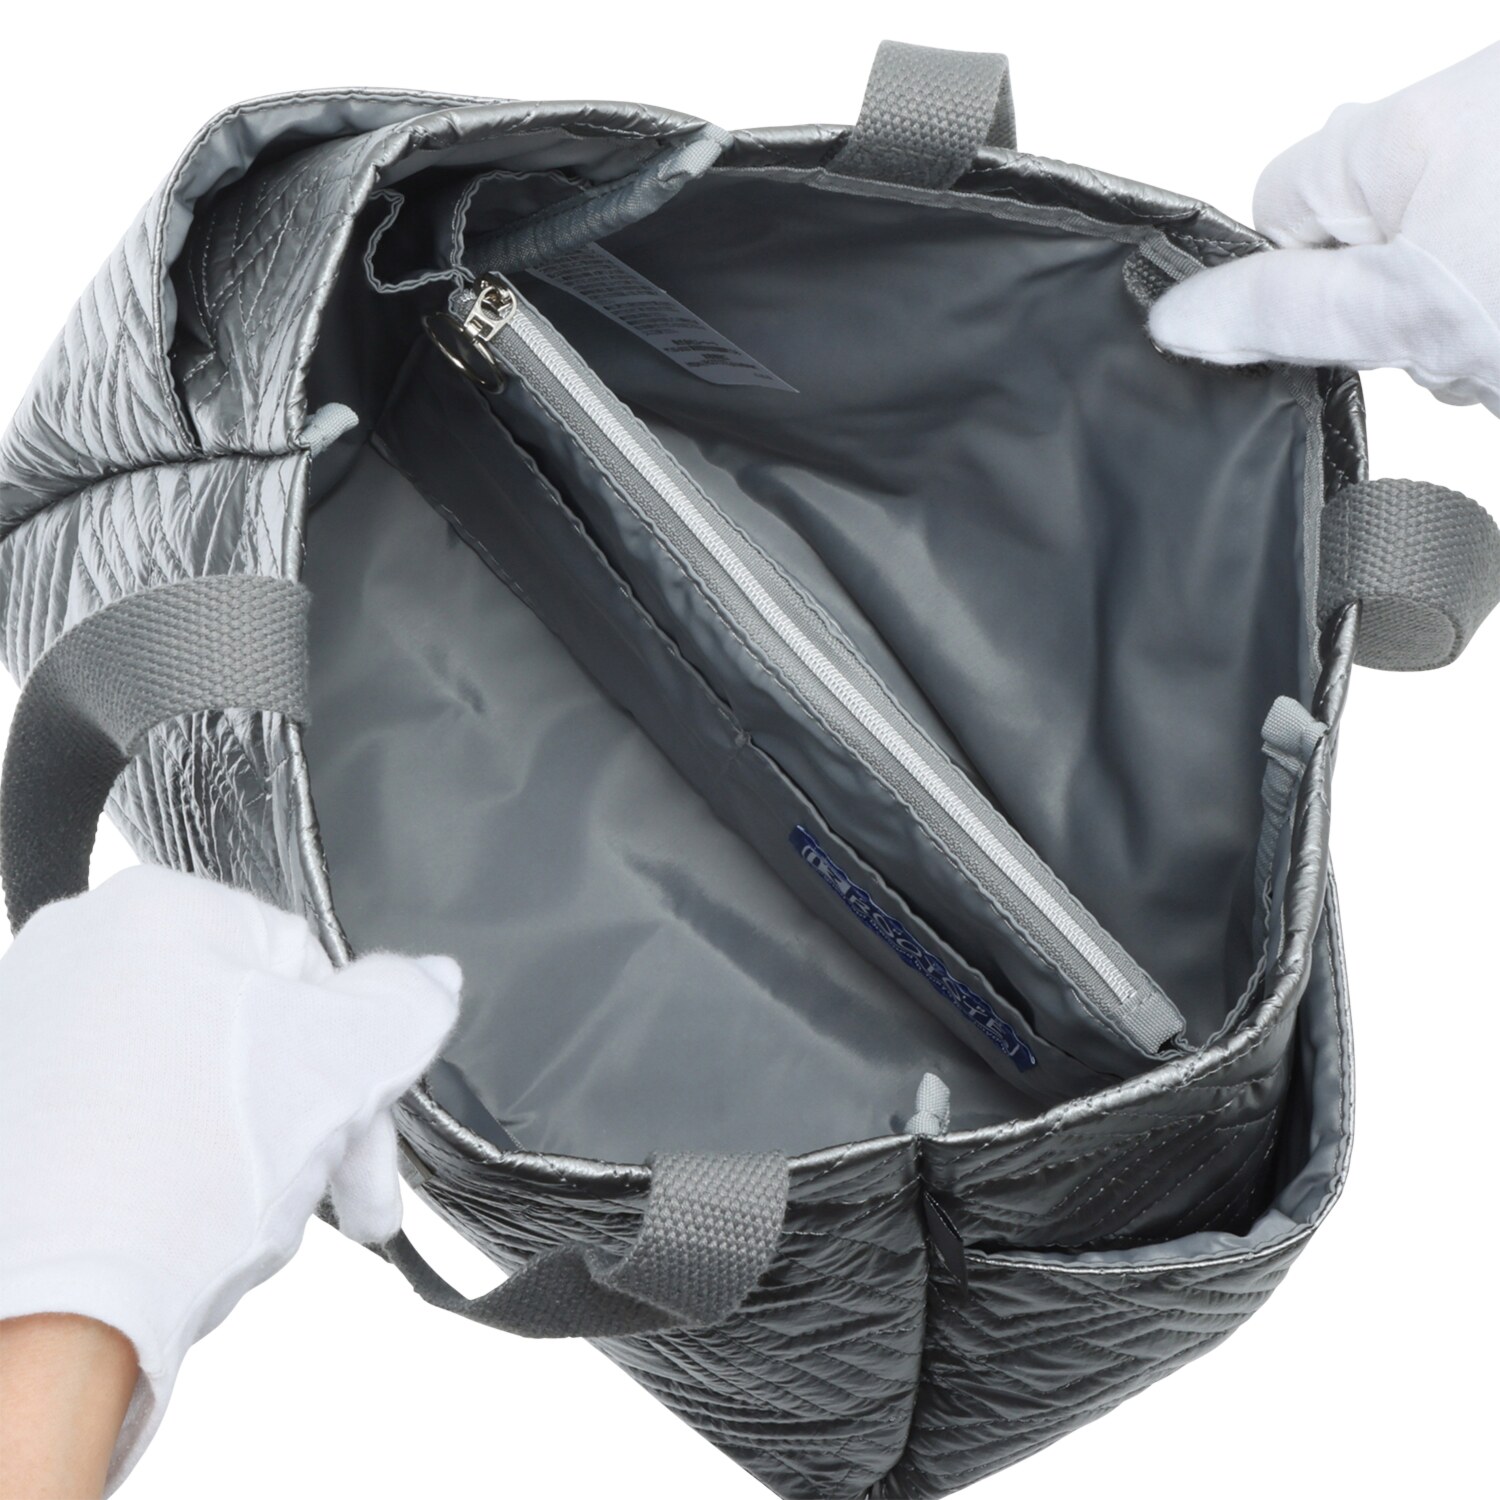 ルートート バッグインバッグ機能で 中身の整理整頓が可能！ 大人キルティング デリトートバッグ